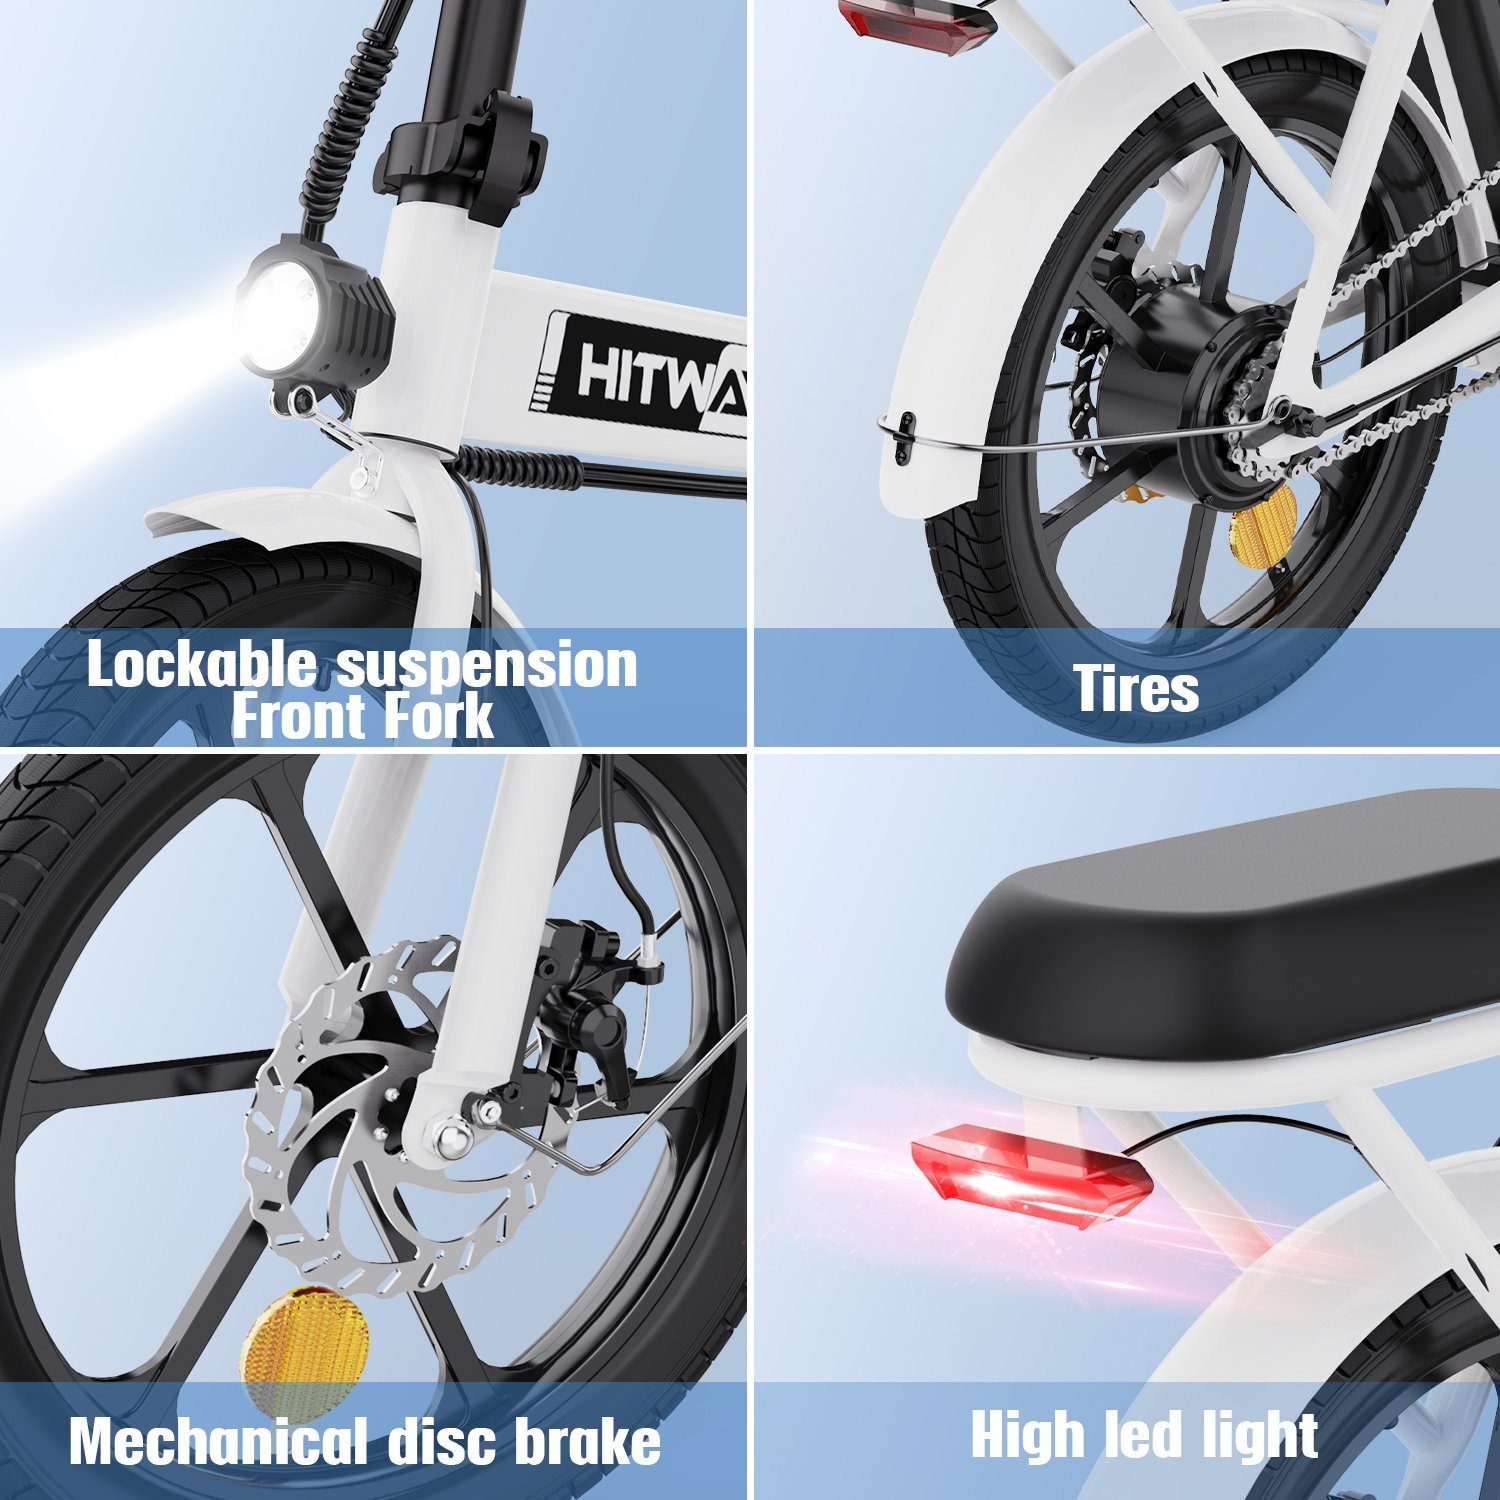 E-Bike Fahrrad 250W Ah HITWAY Kettenschaltung, Klapprad Heckmotor 36 8,4 / weiß 16 Luftreifen, Zoll V